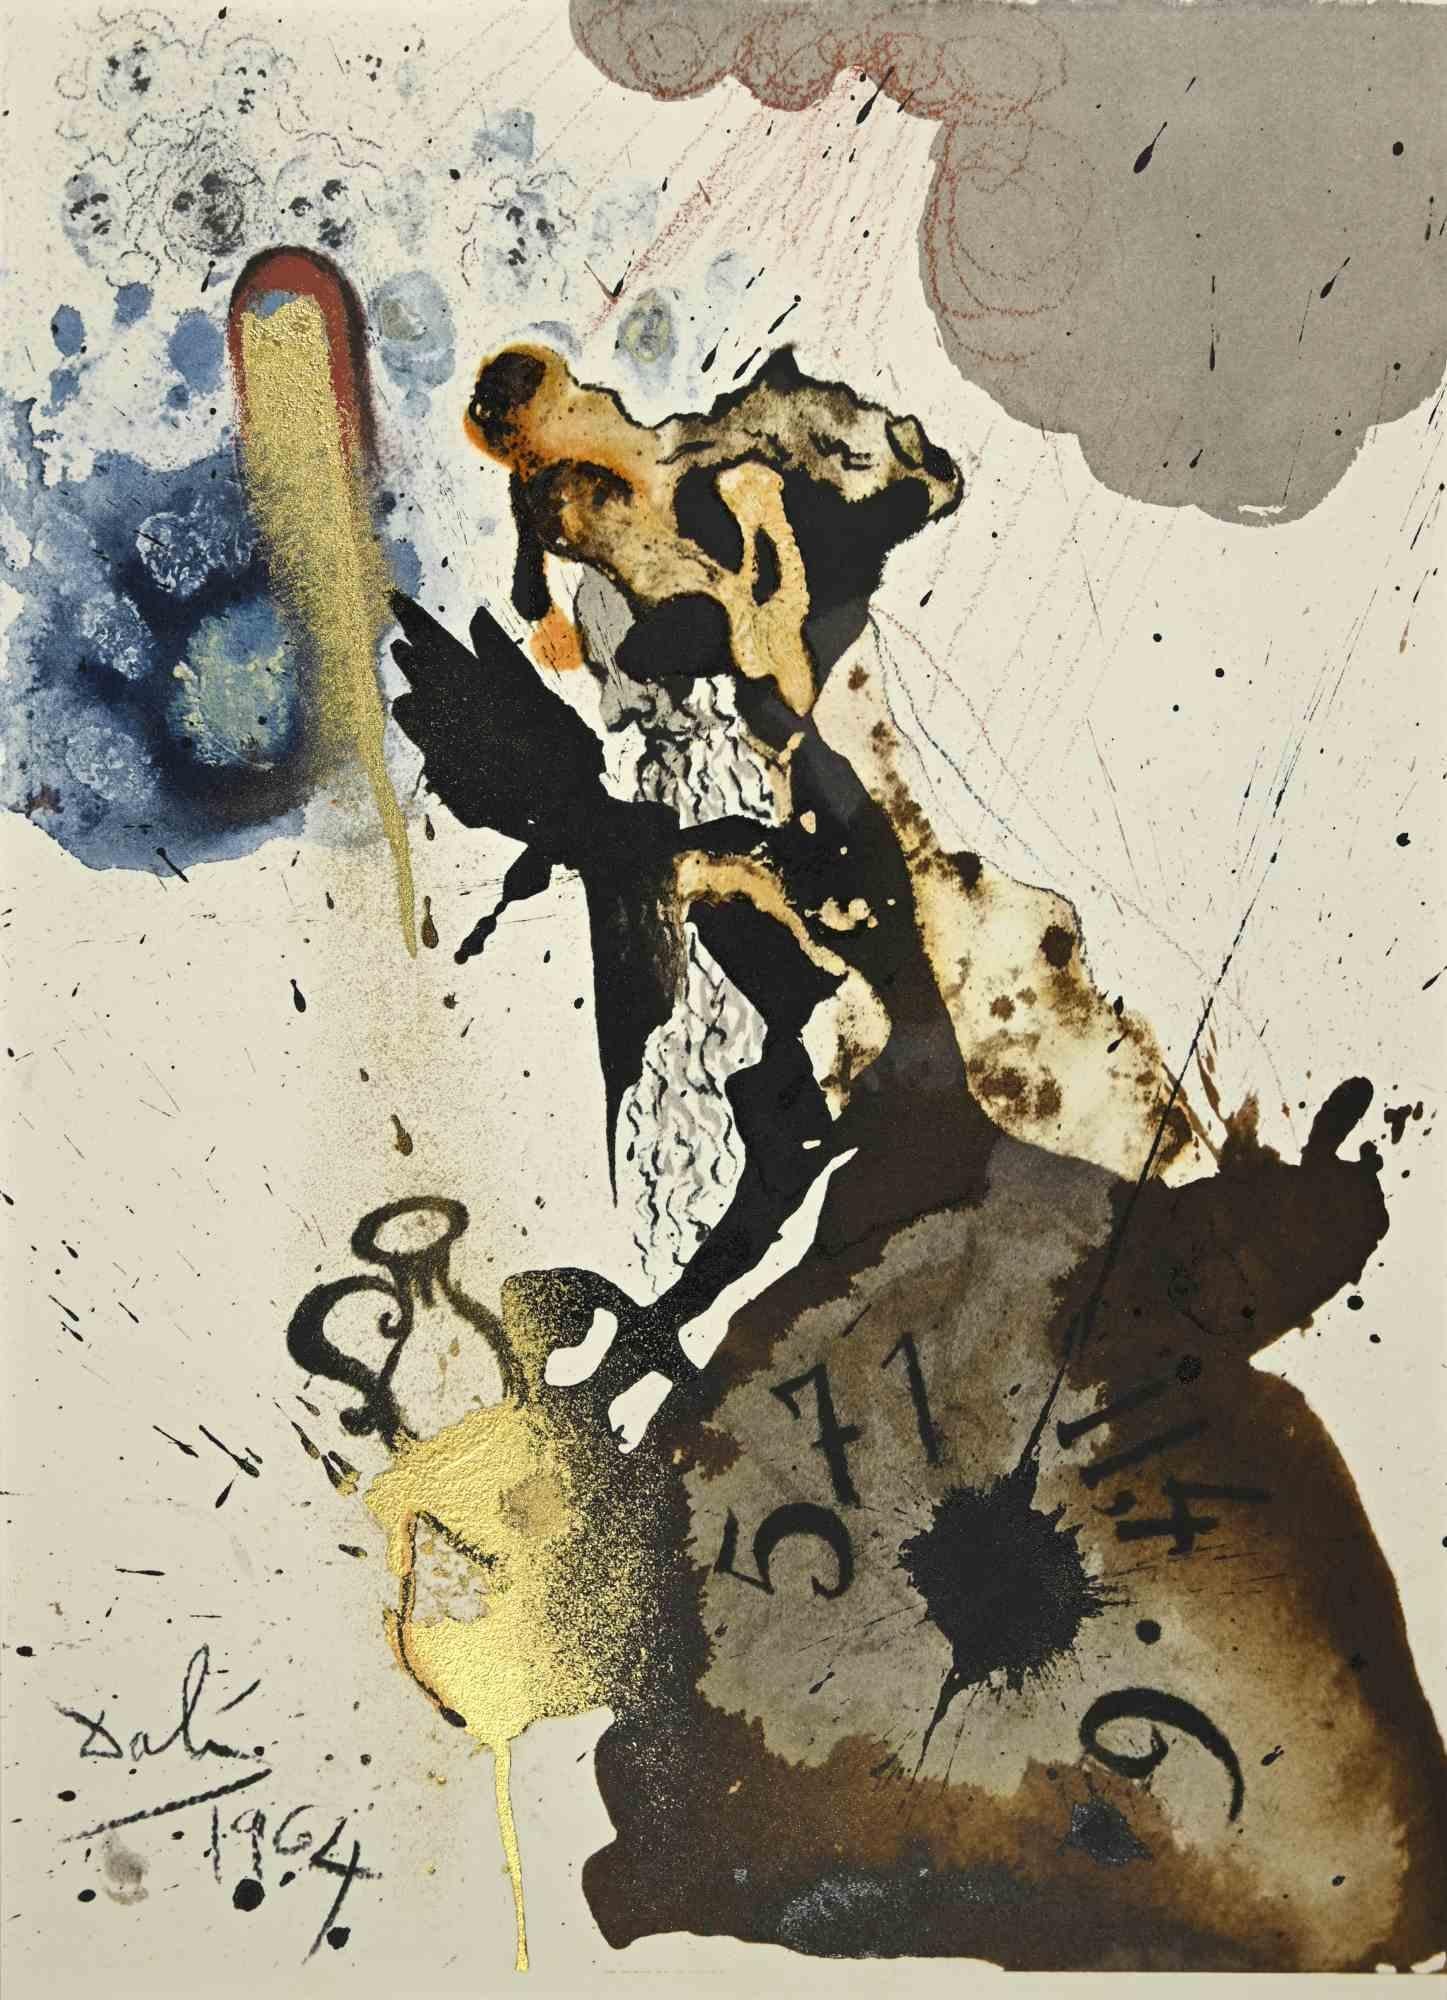 Salvador Dalí Print - Mane, Thecel, Phares - Lithograph  - 1964